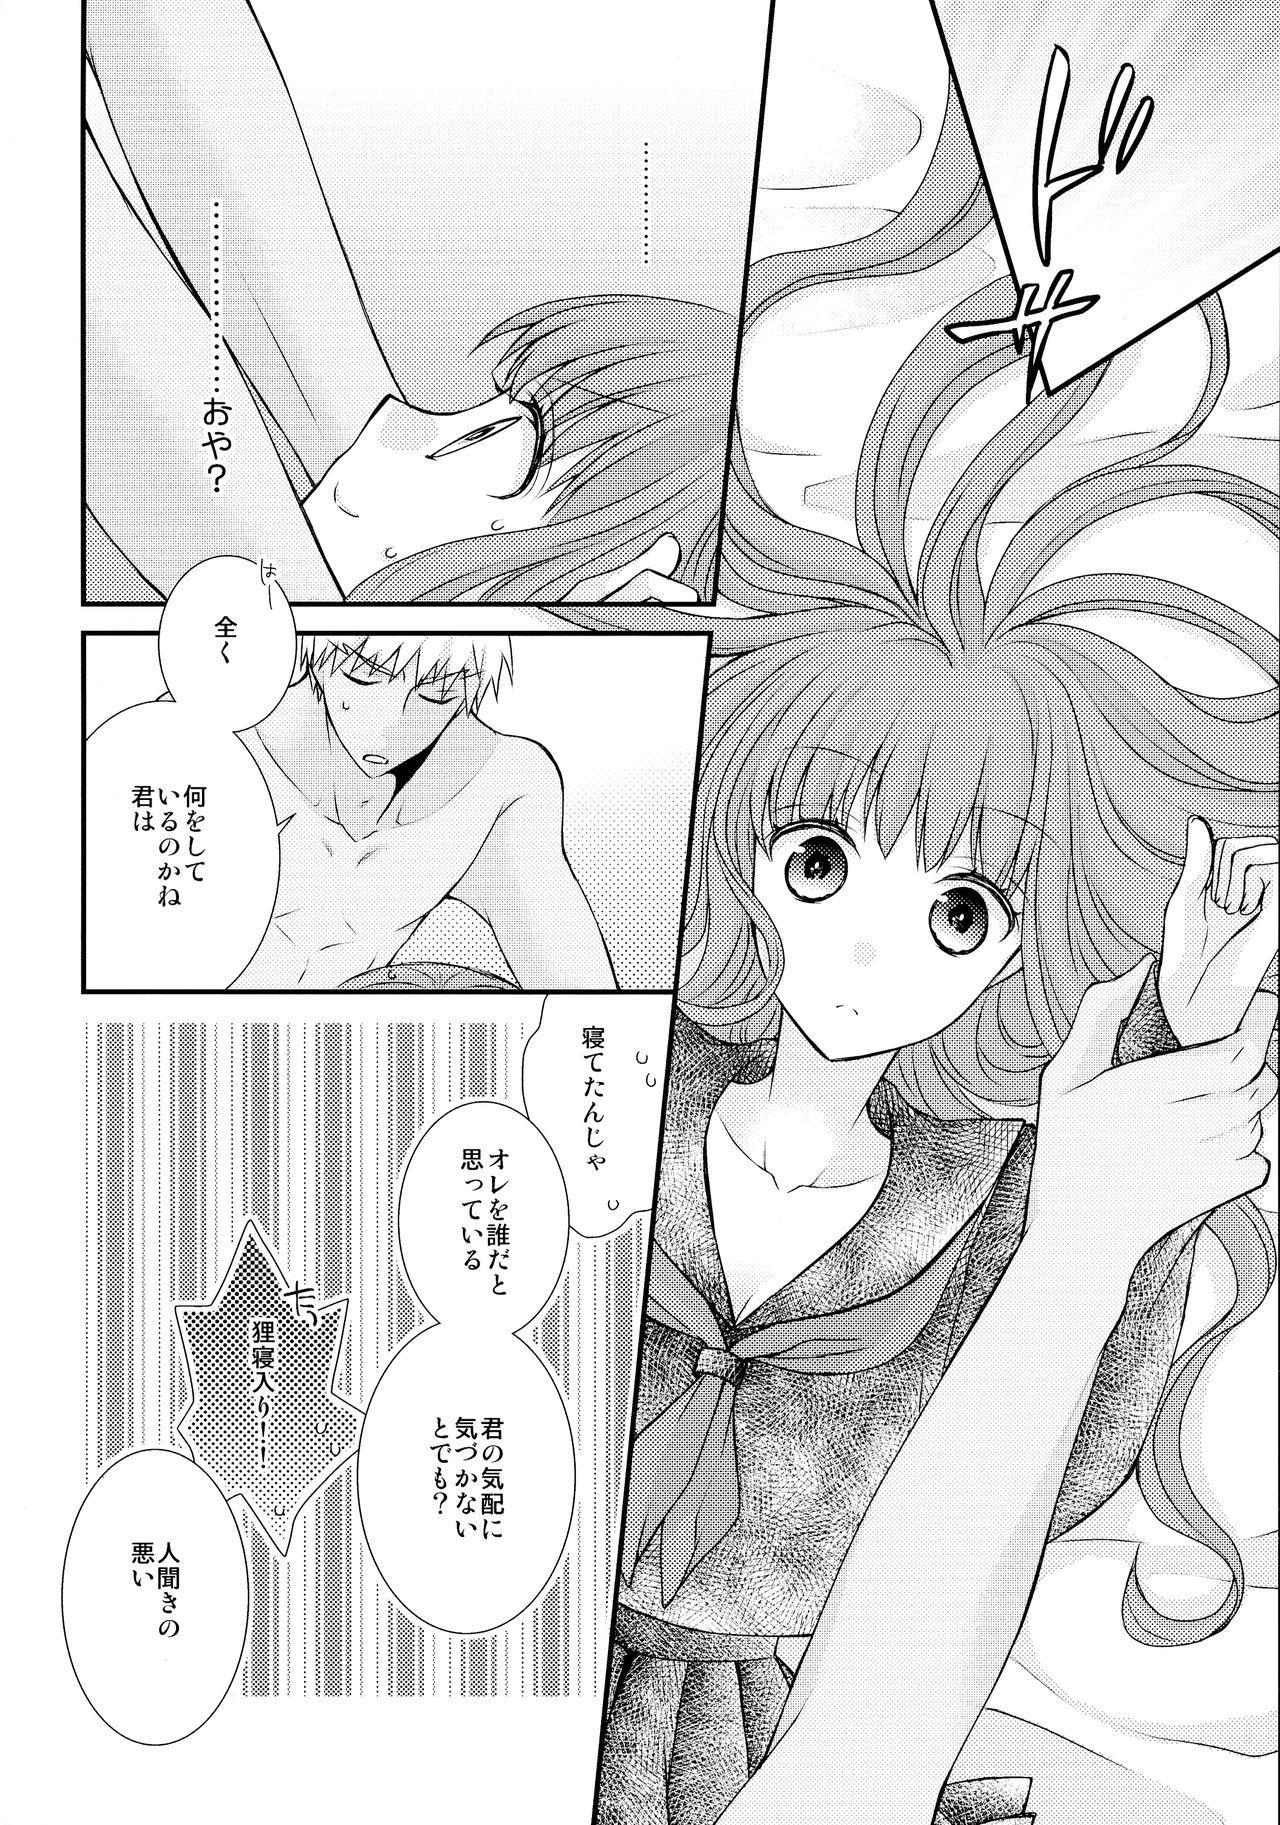 Lez Itsuka no Mirai to Kako no Yume - Fate extra Dirty Talk - Page 12